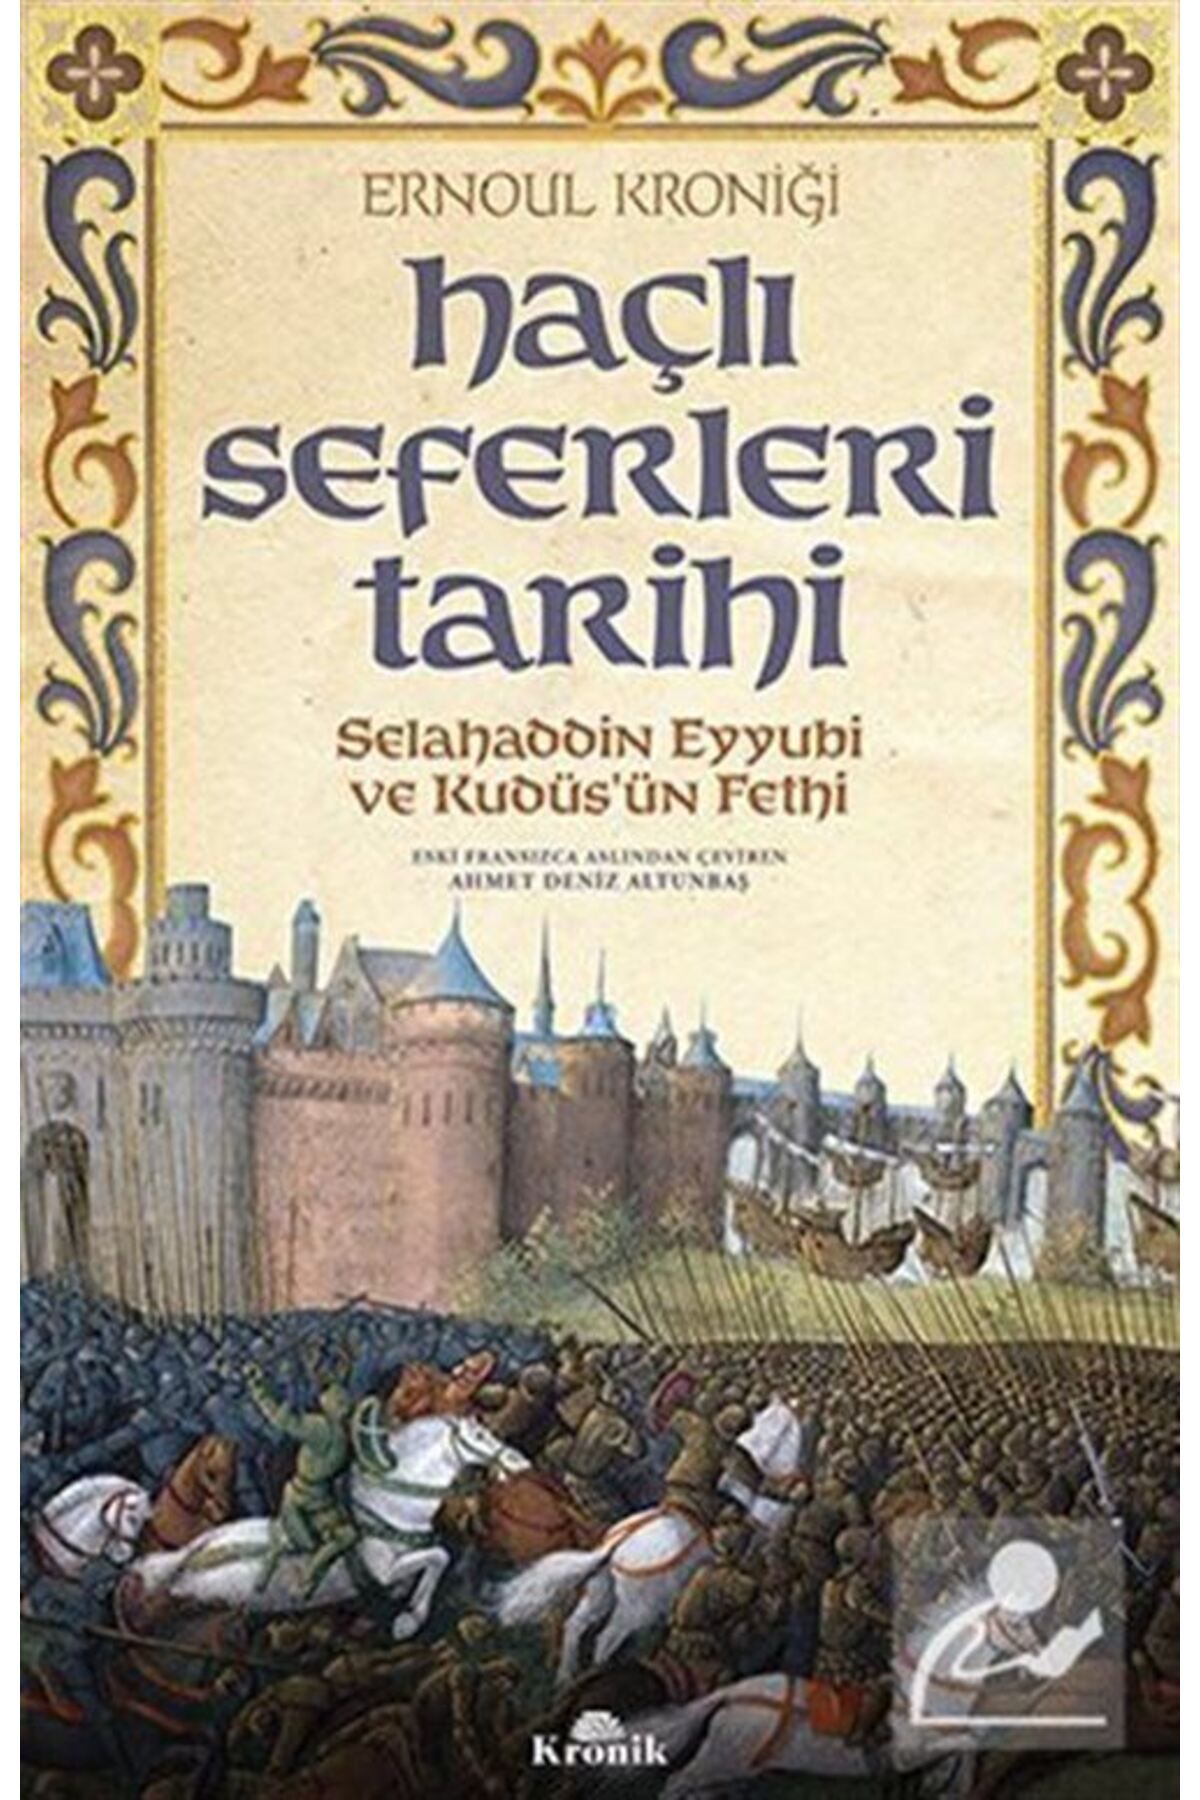 Tübitak Yayınları Haçlı Seferleri Tarihi & Selahaddin Eyyubi Ve Kudüs'ün Fethi